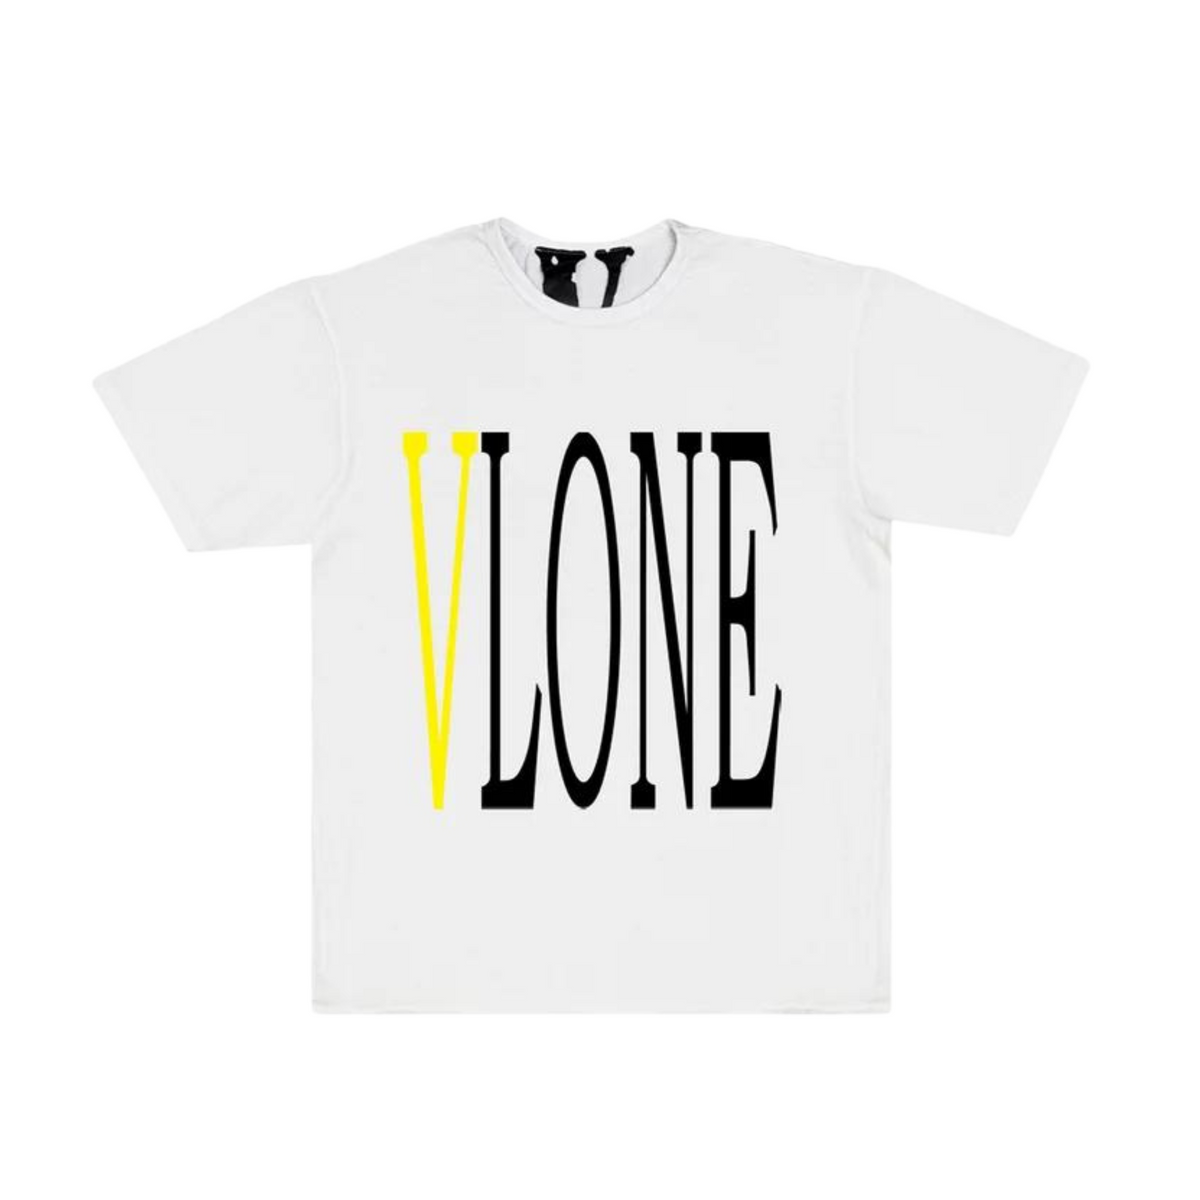 Vlone Staple T-shirt "White/Yellow"